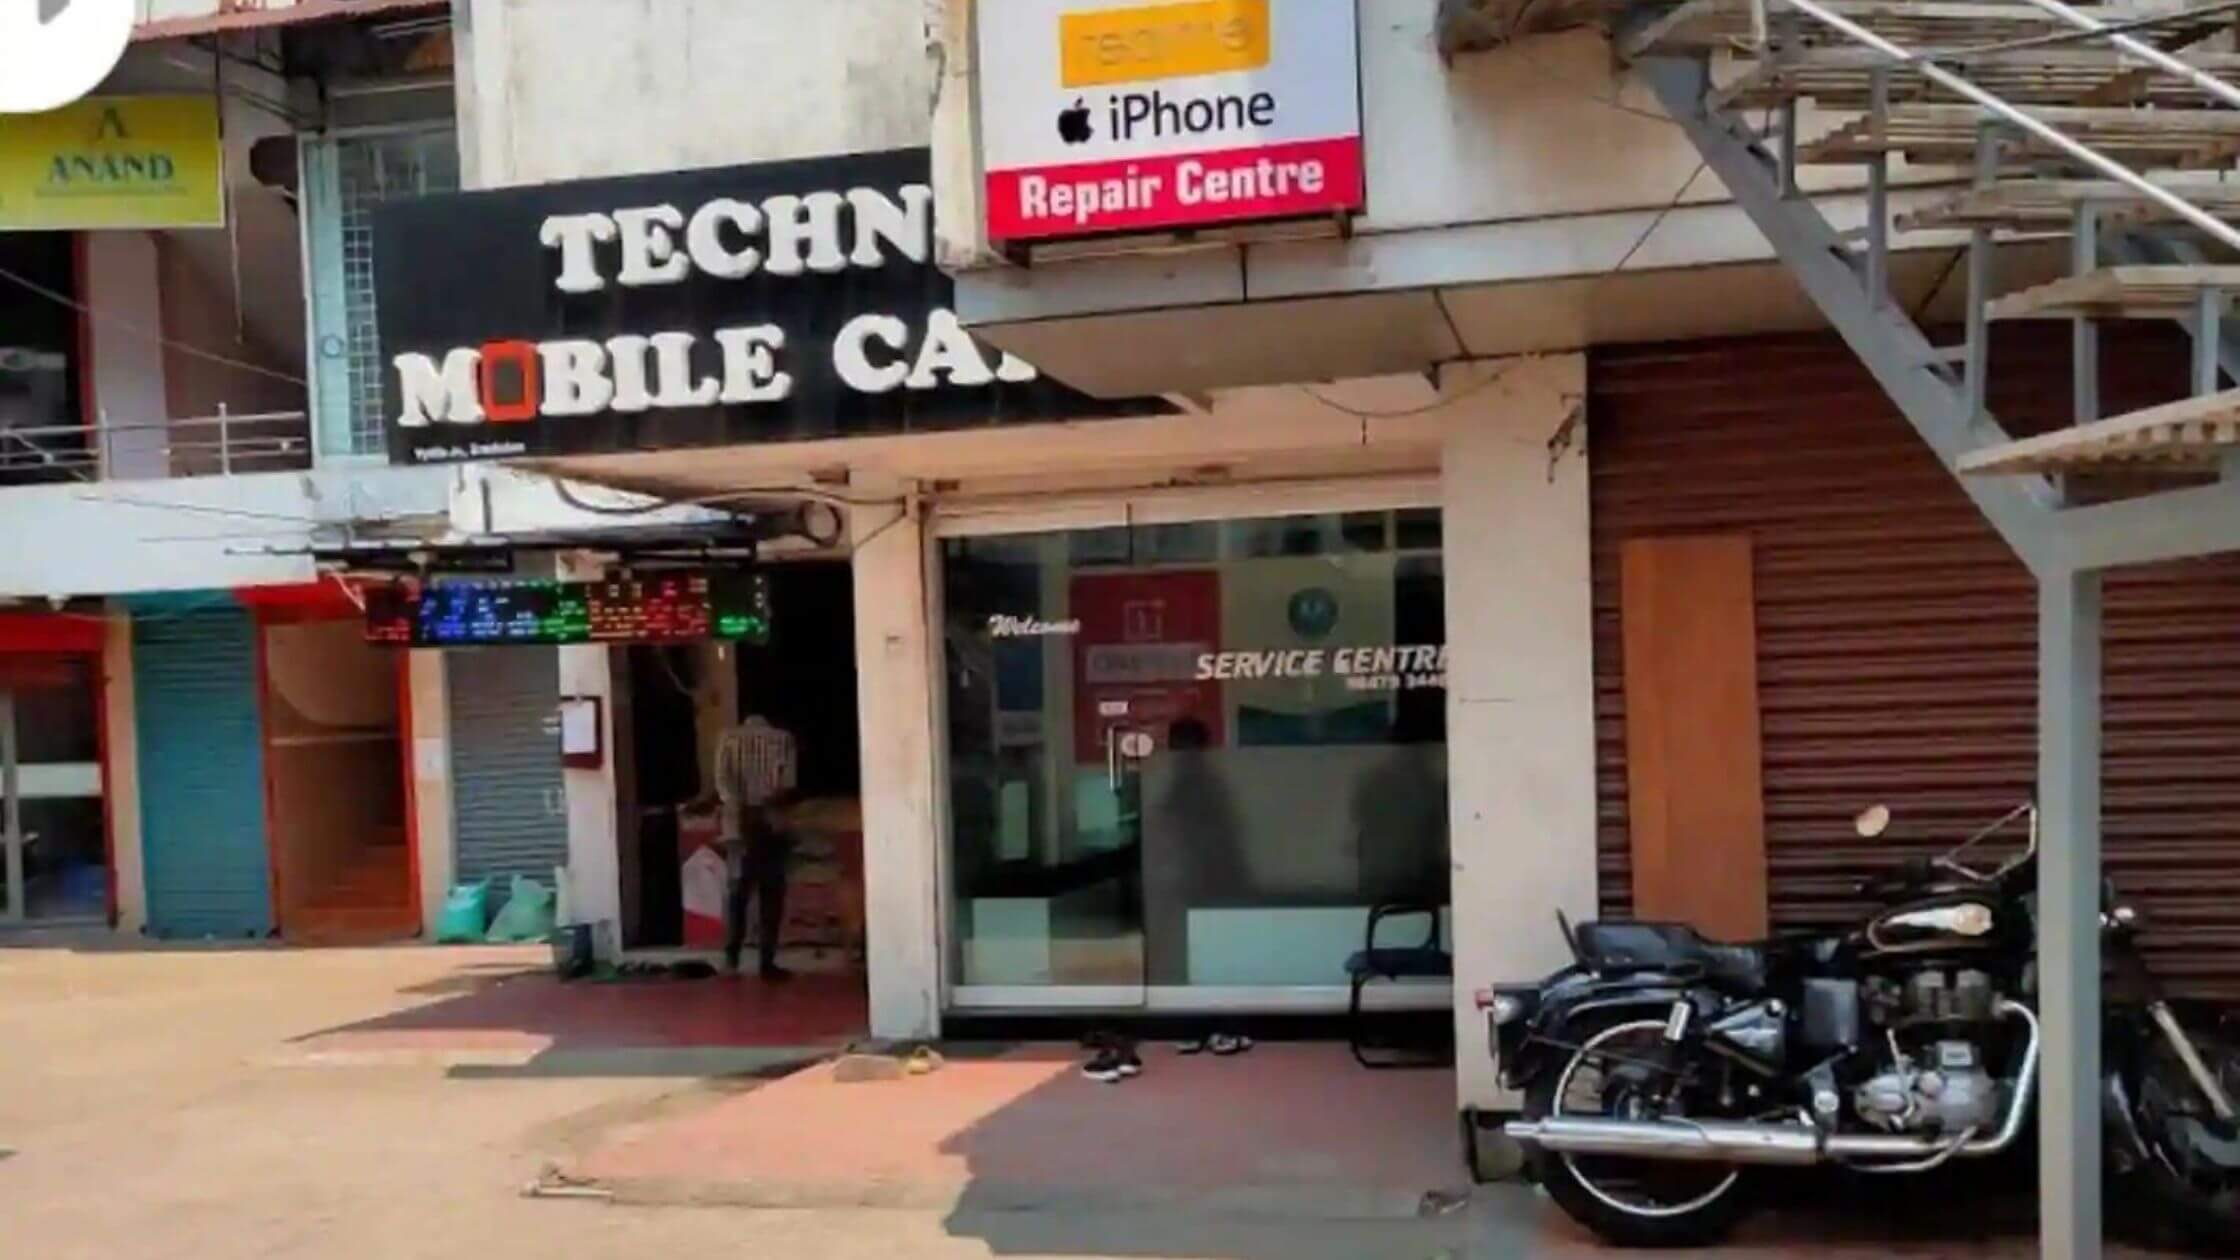 Techno Mobile Care